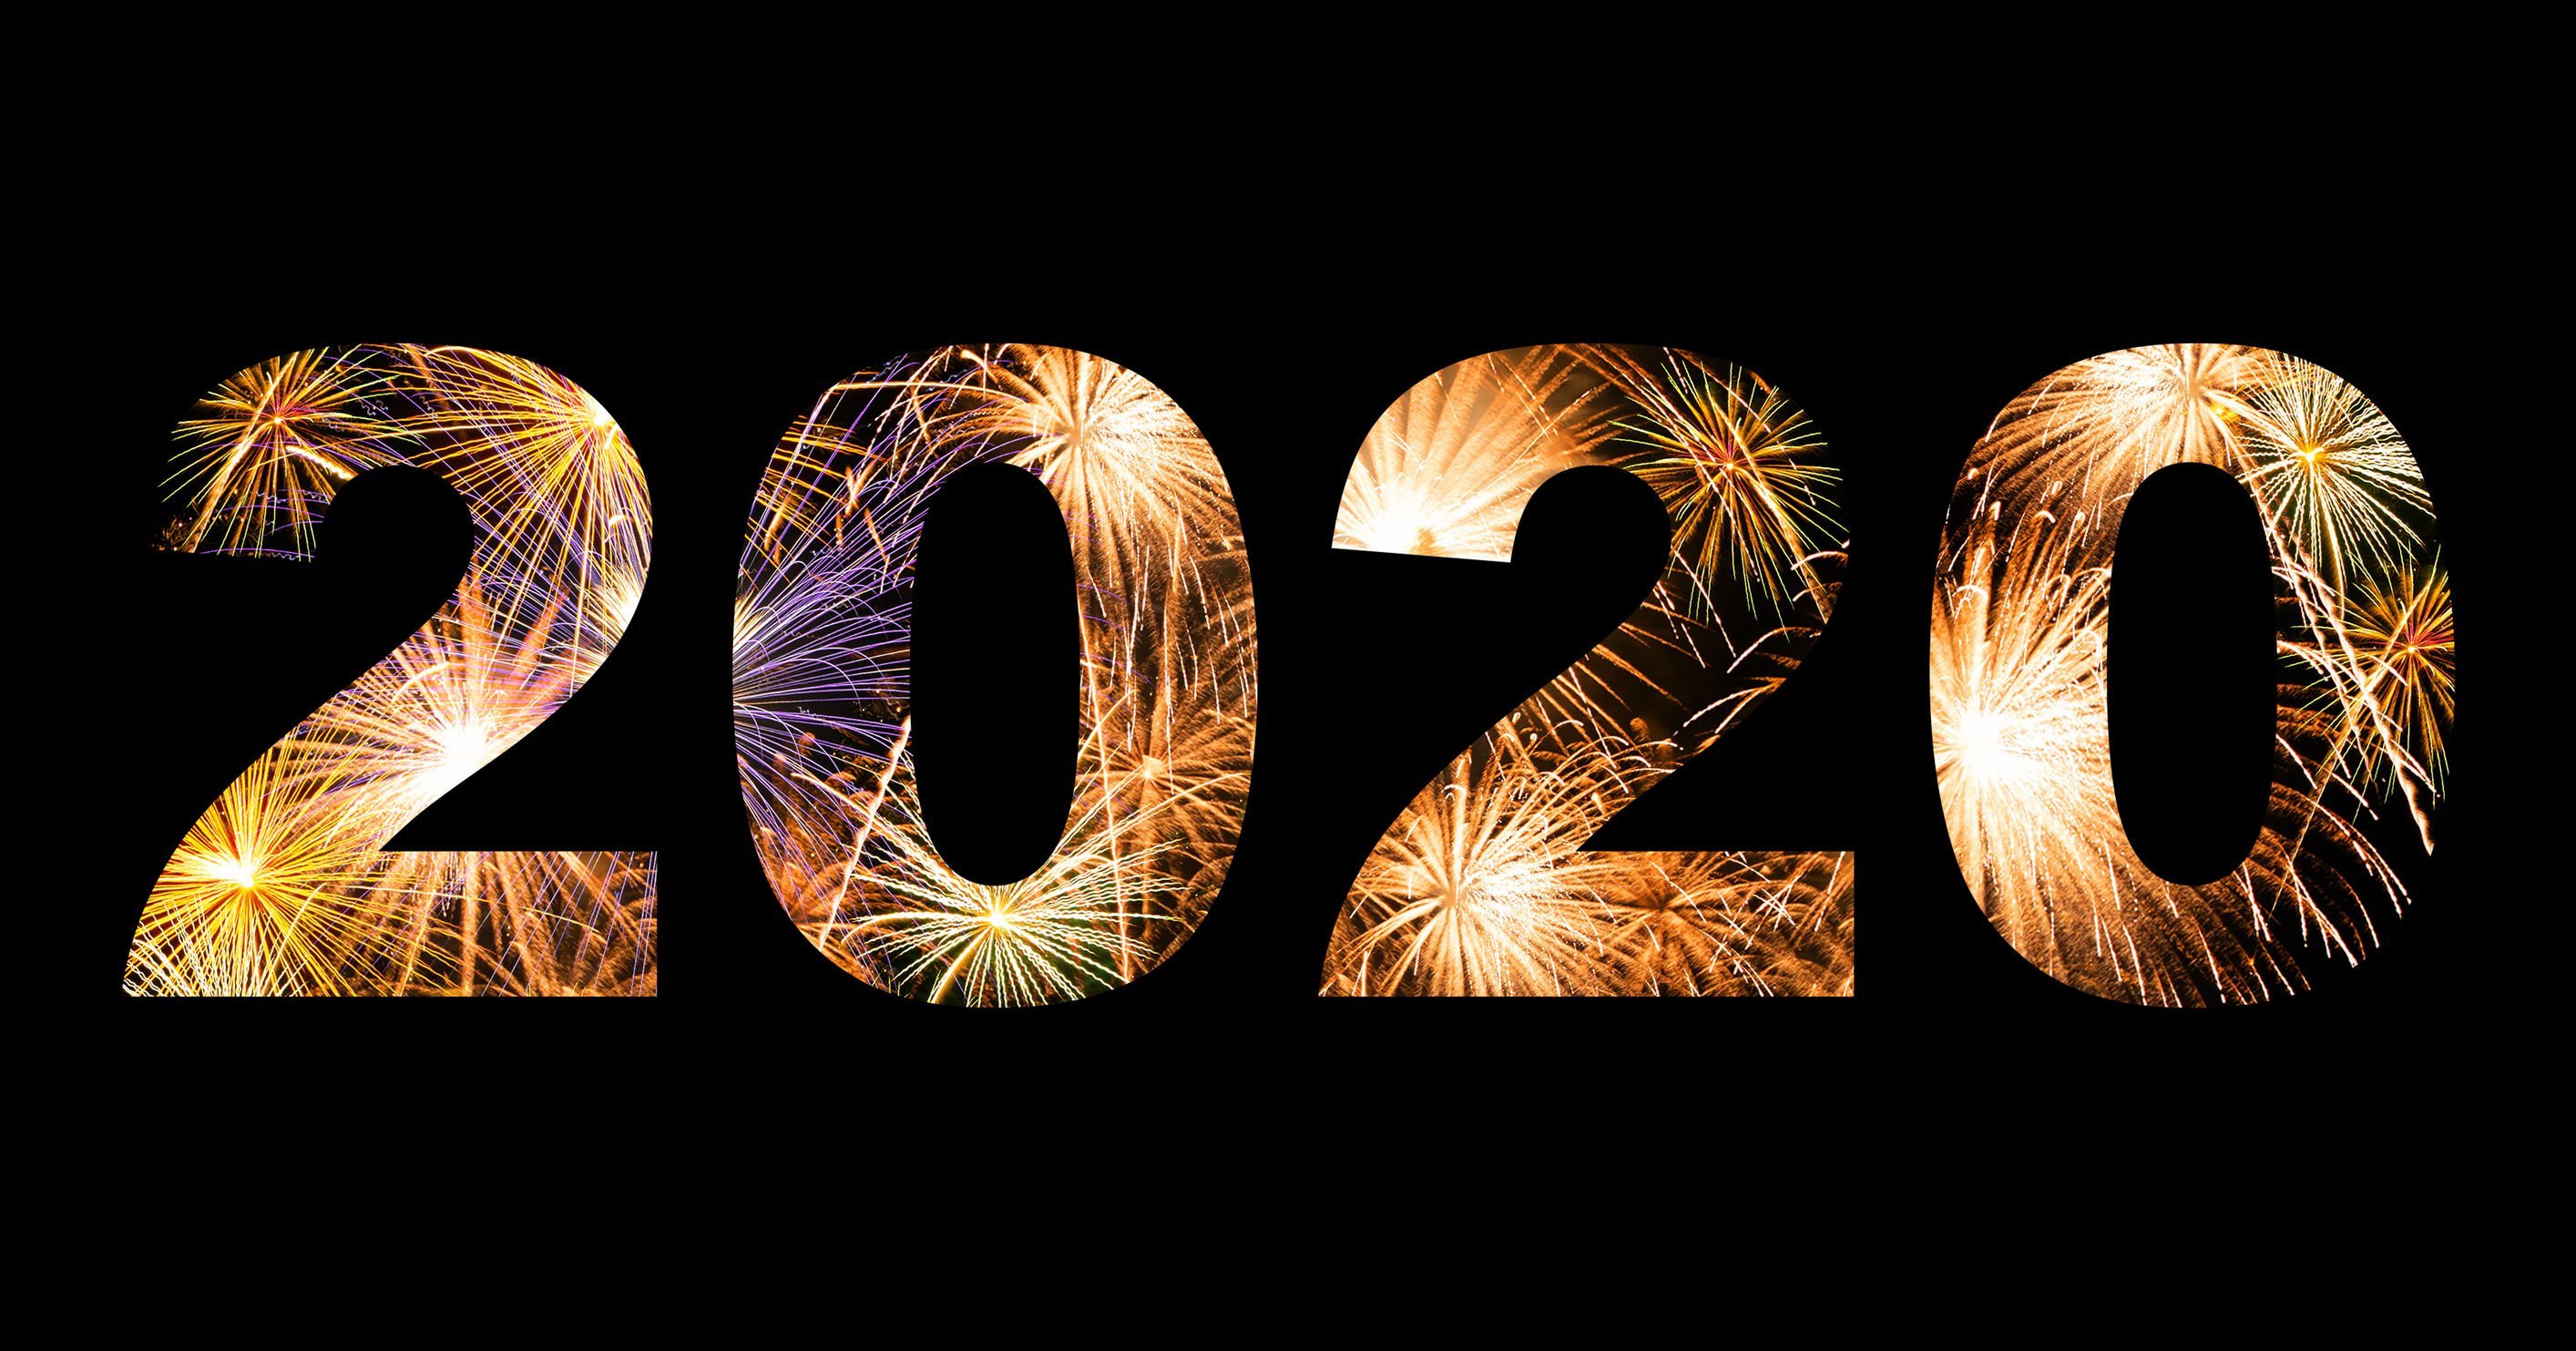 Ilustração com o número 2020 em um fundo preto. Dentro de os números, estão inseridas imagens de fogos de artifício.